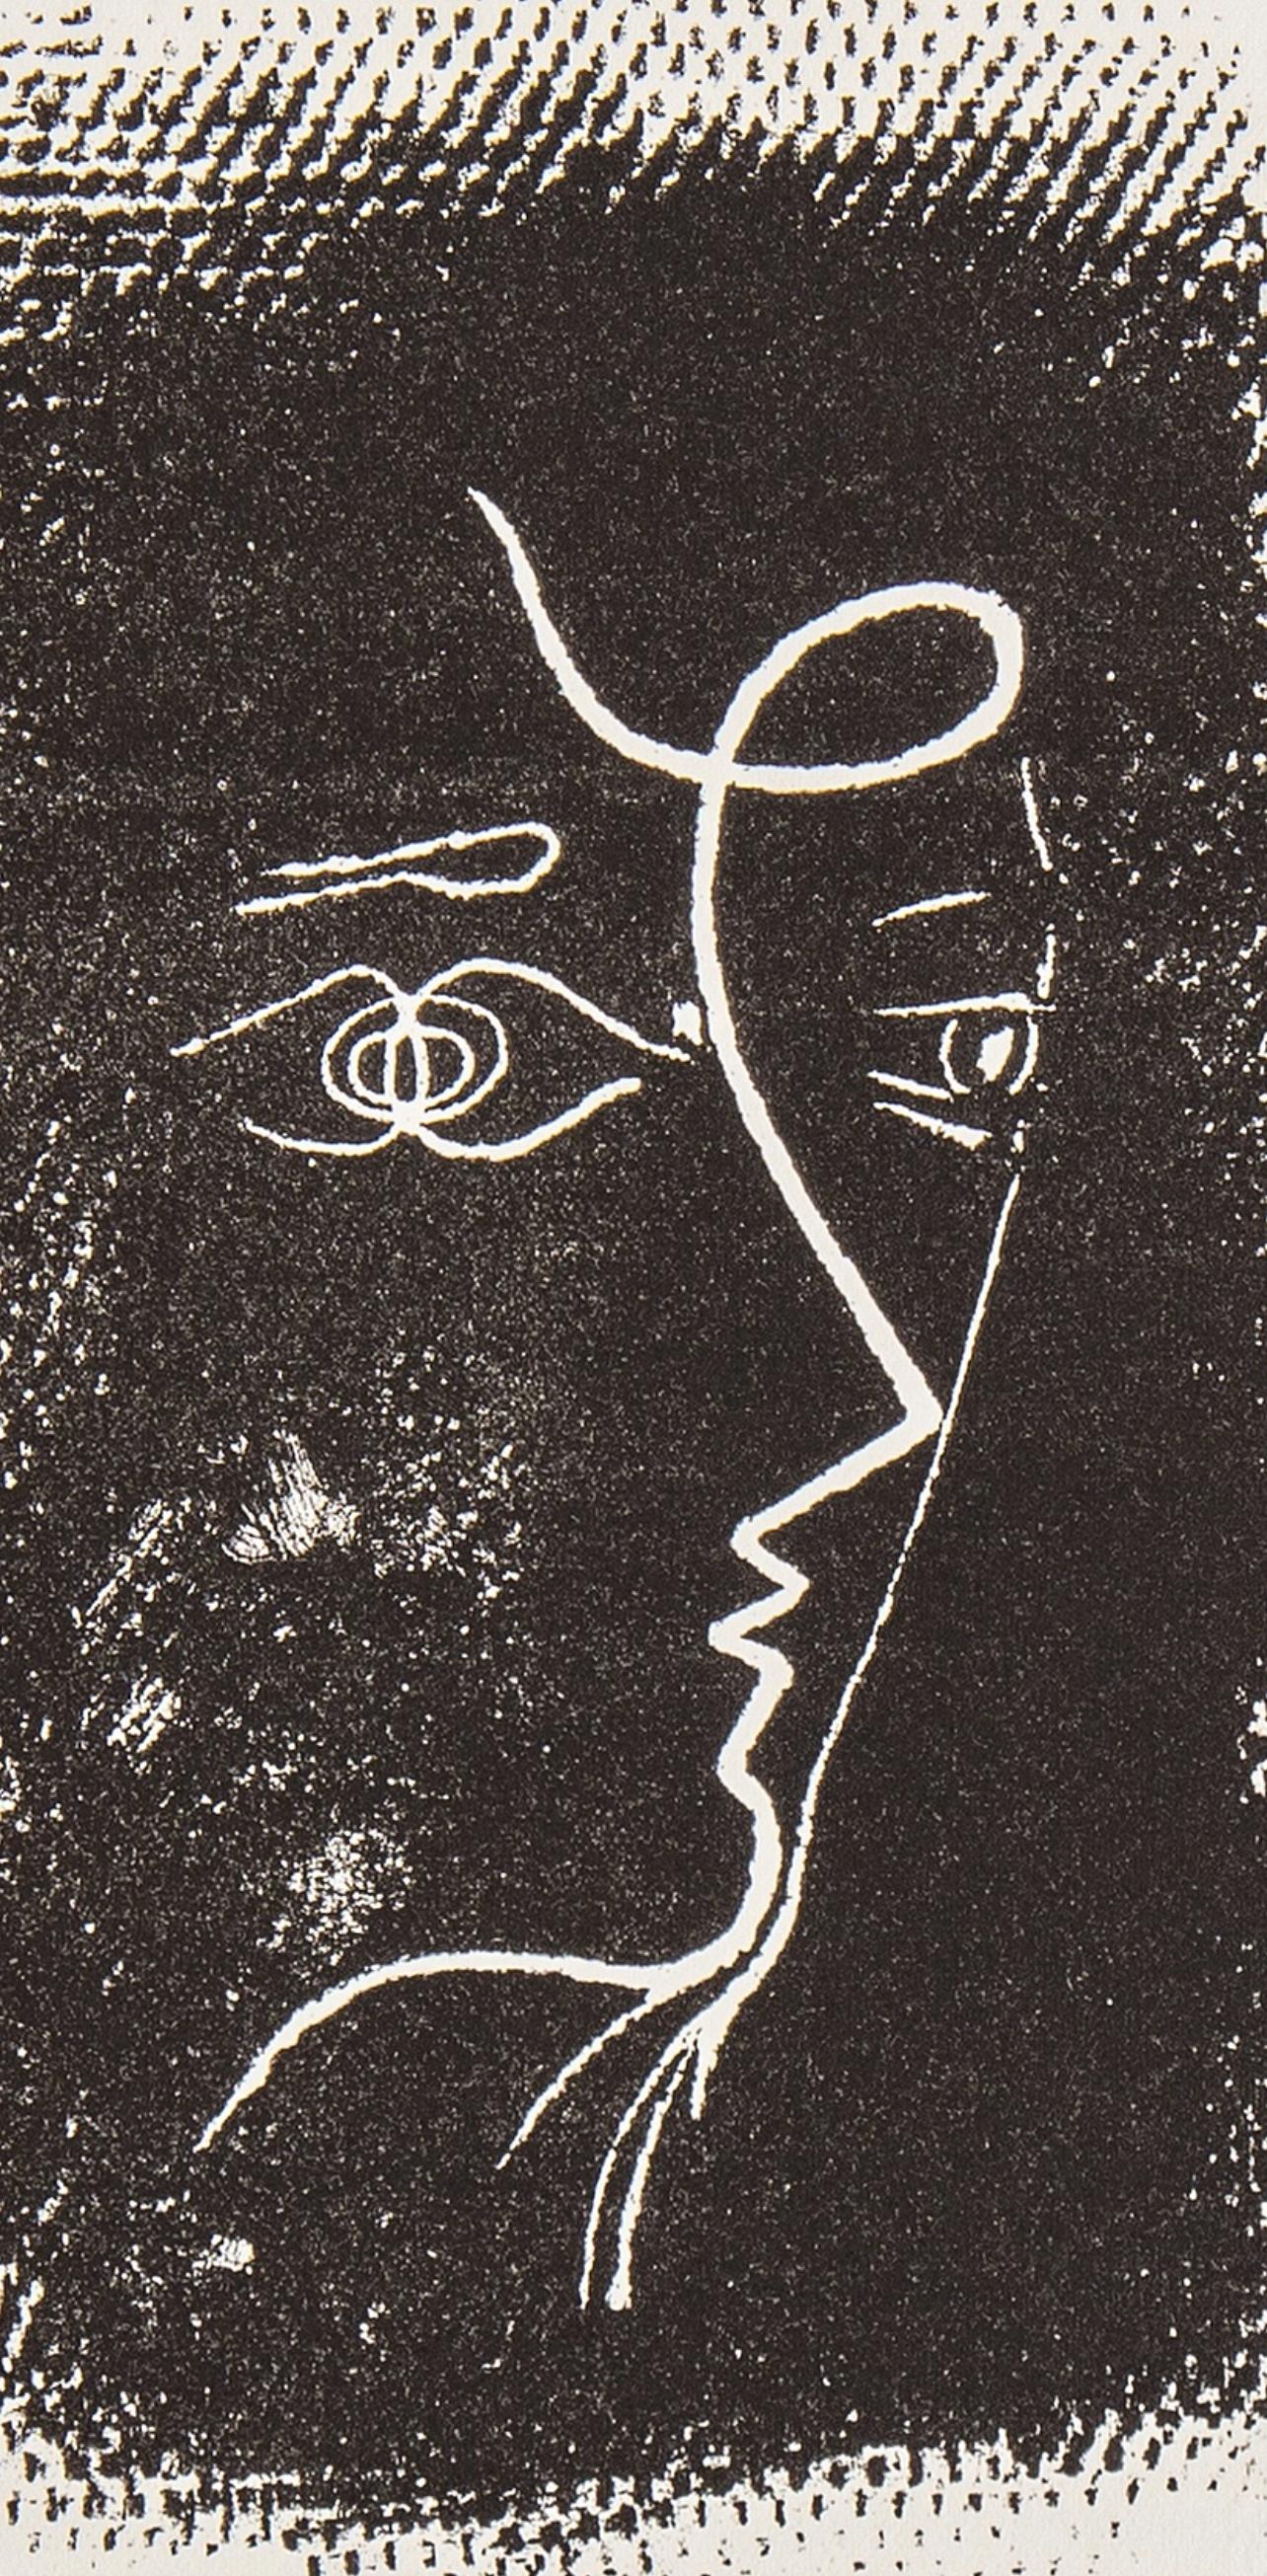 Braque, Profil de femme (Mourlot 25), Souvenirs et portraits d'artistes (after) - Modern Print by Georges Braque